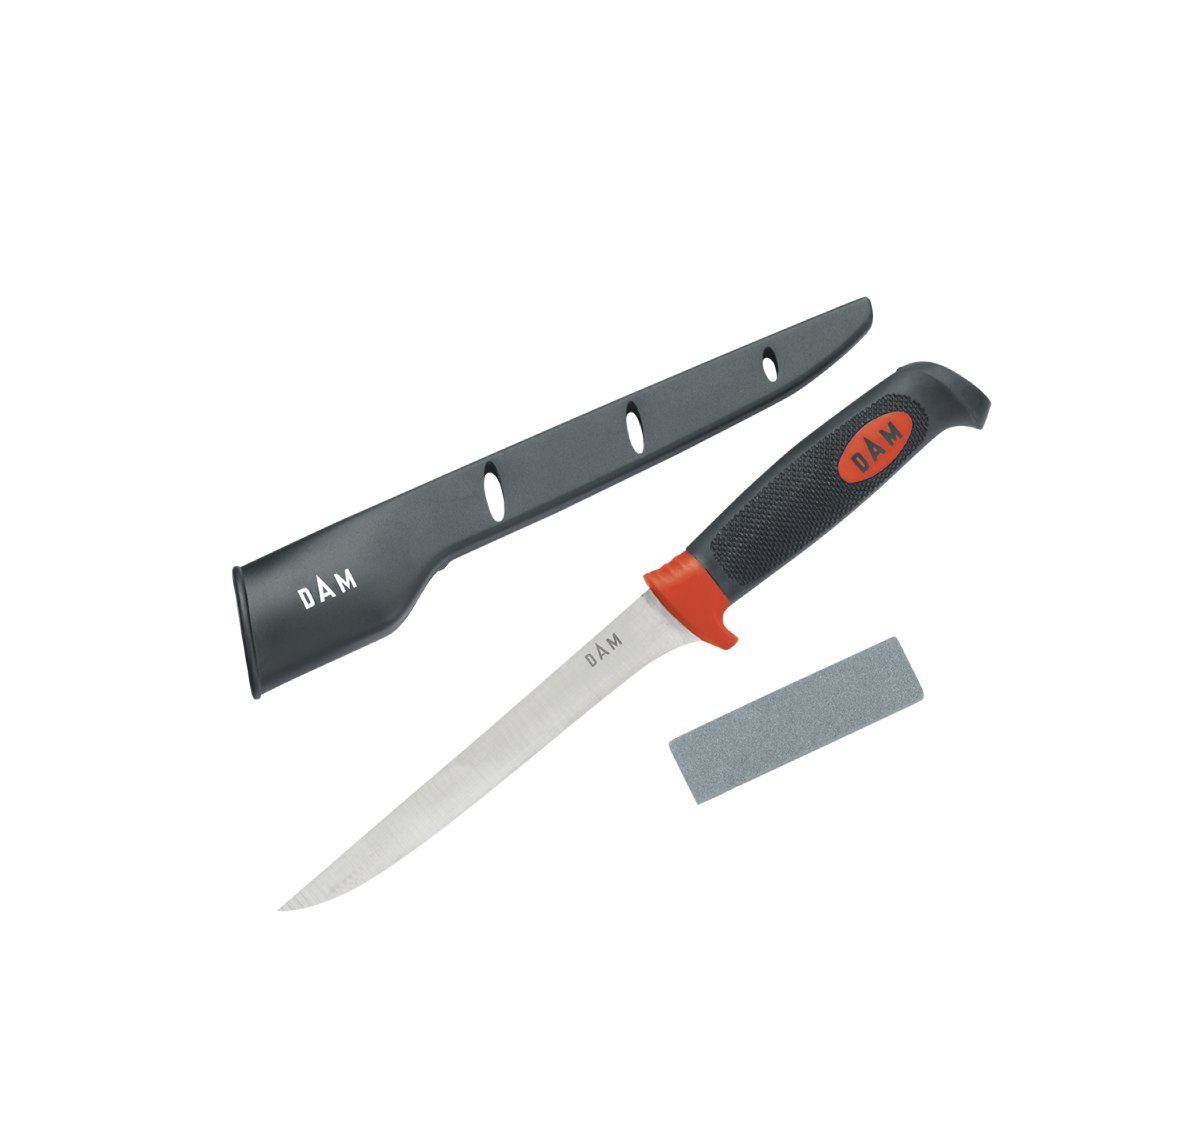 Filetiermesser 17cm Set Schleifstein DAM Fishing Messerset Schutz, 3-teiliges Filetiermesser Messer 3 teilig Messerset